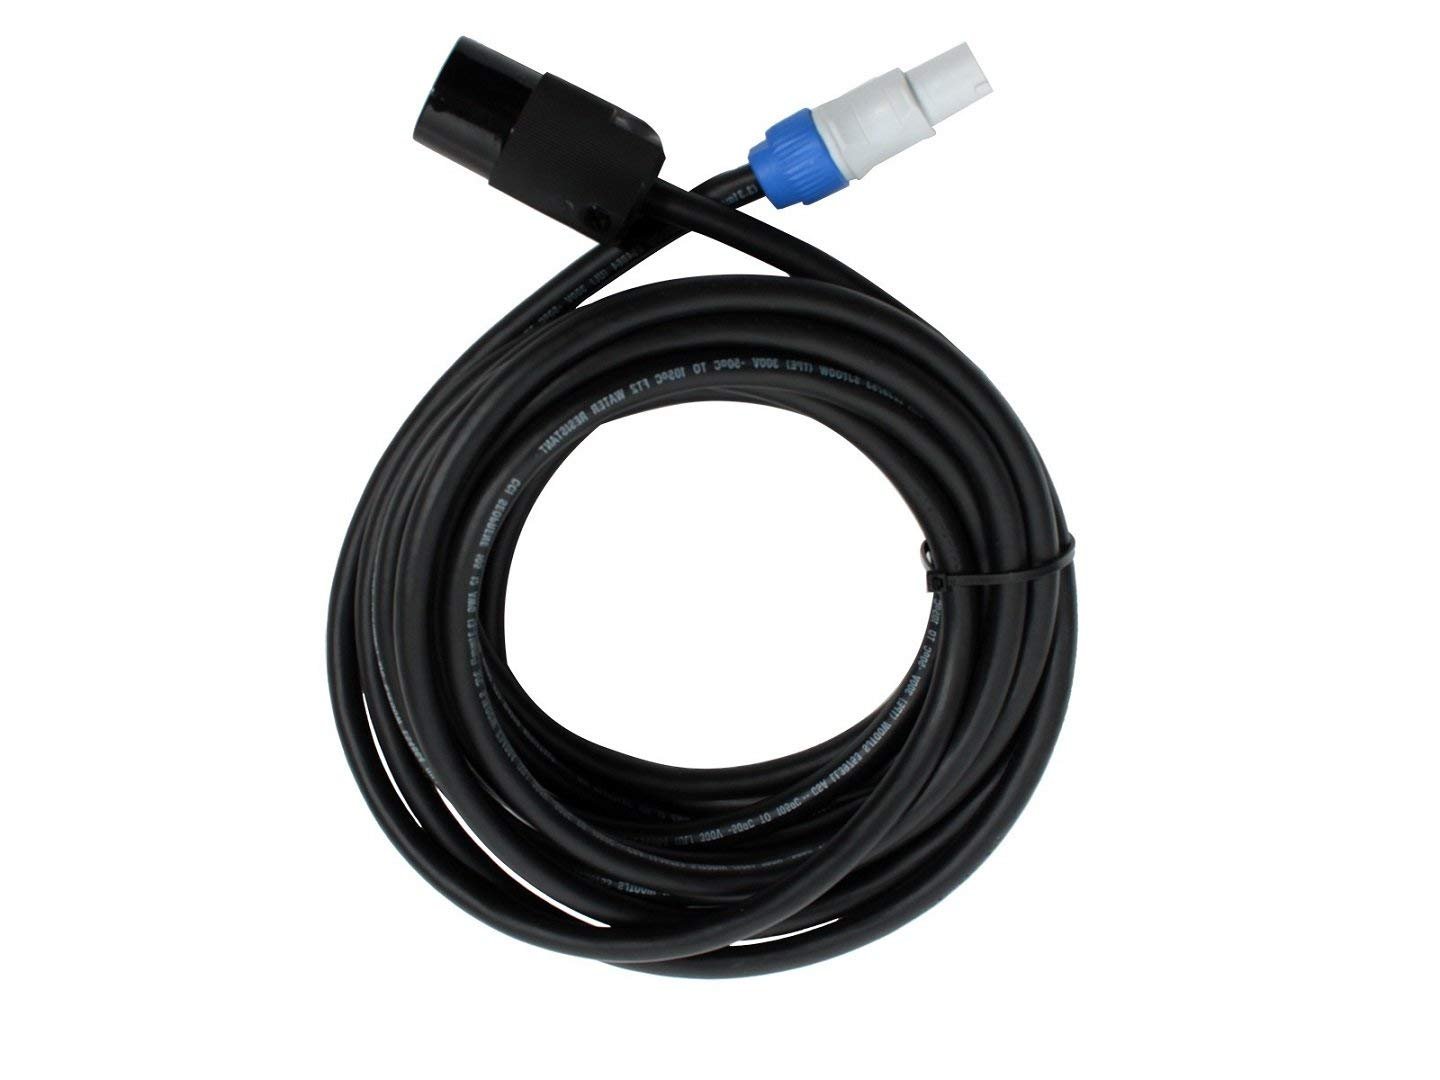 Neutrik Powercon to Edison Female 14awg Power Cable 25' by Elite 